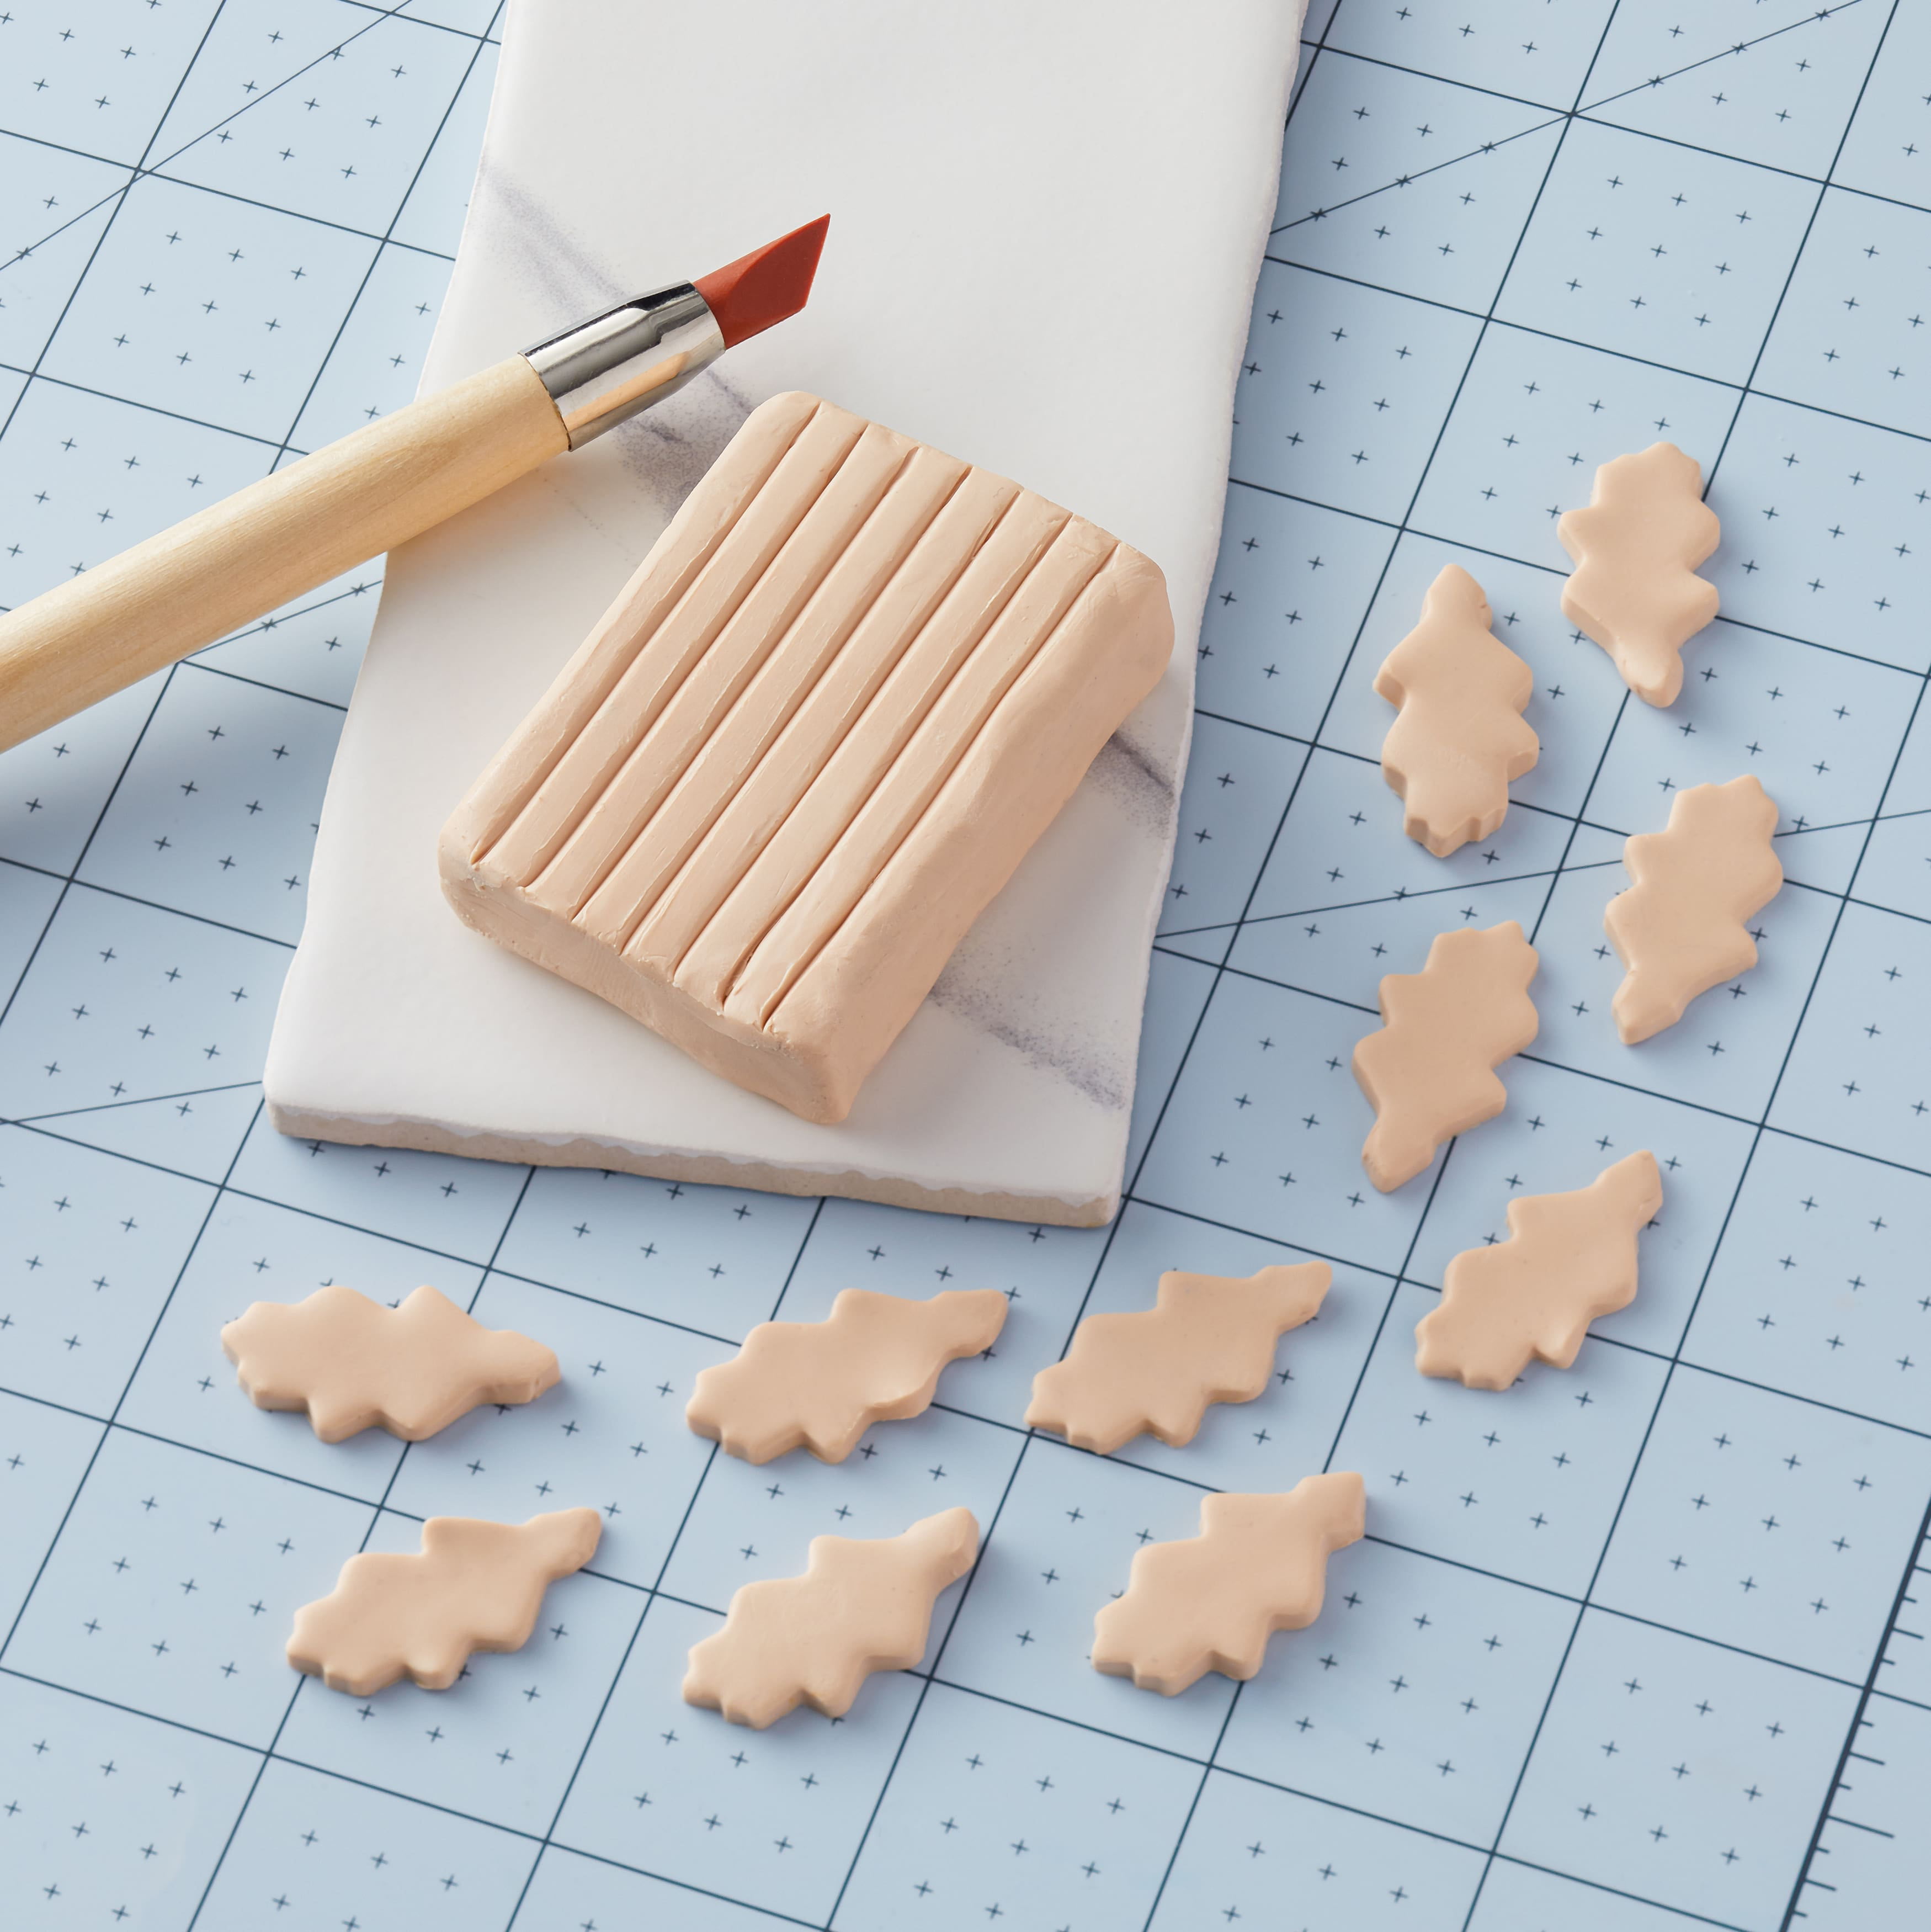 34 Polymer Clay Ideas · Craftwhack